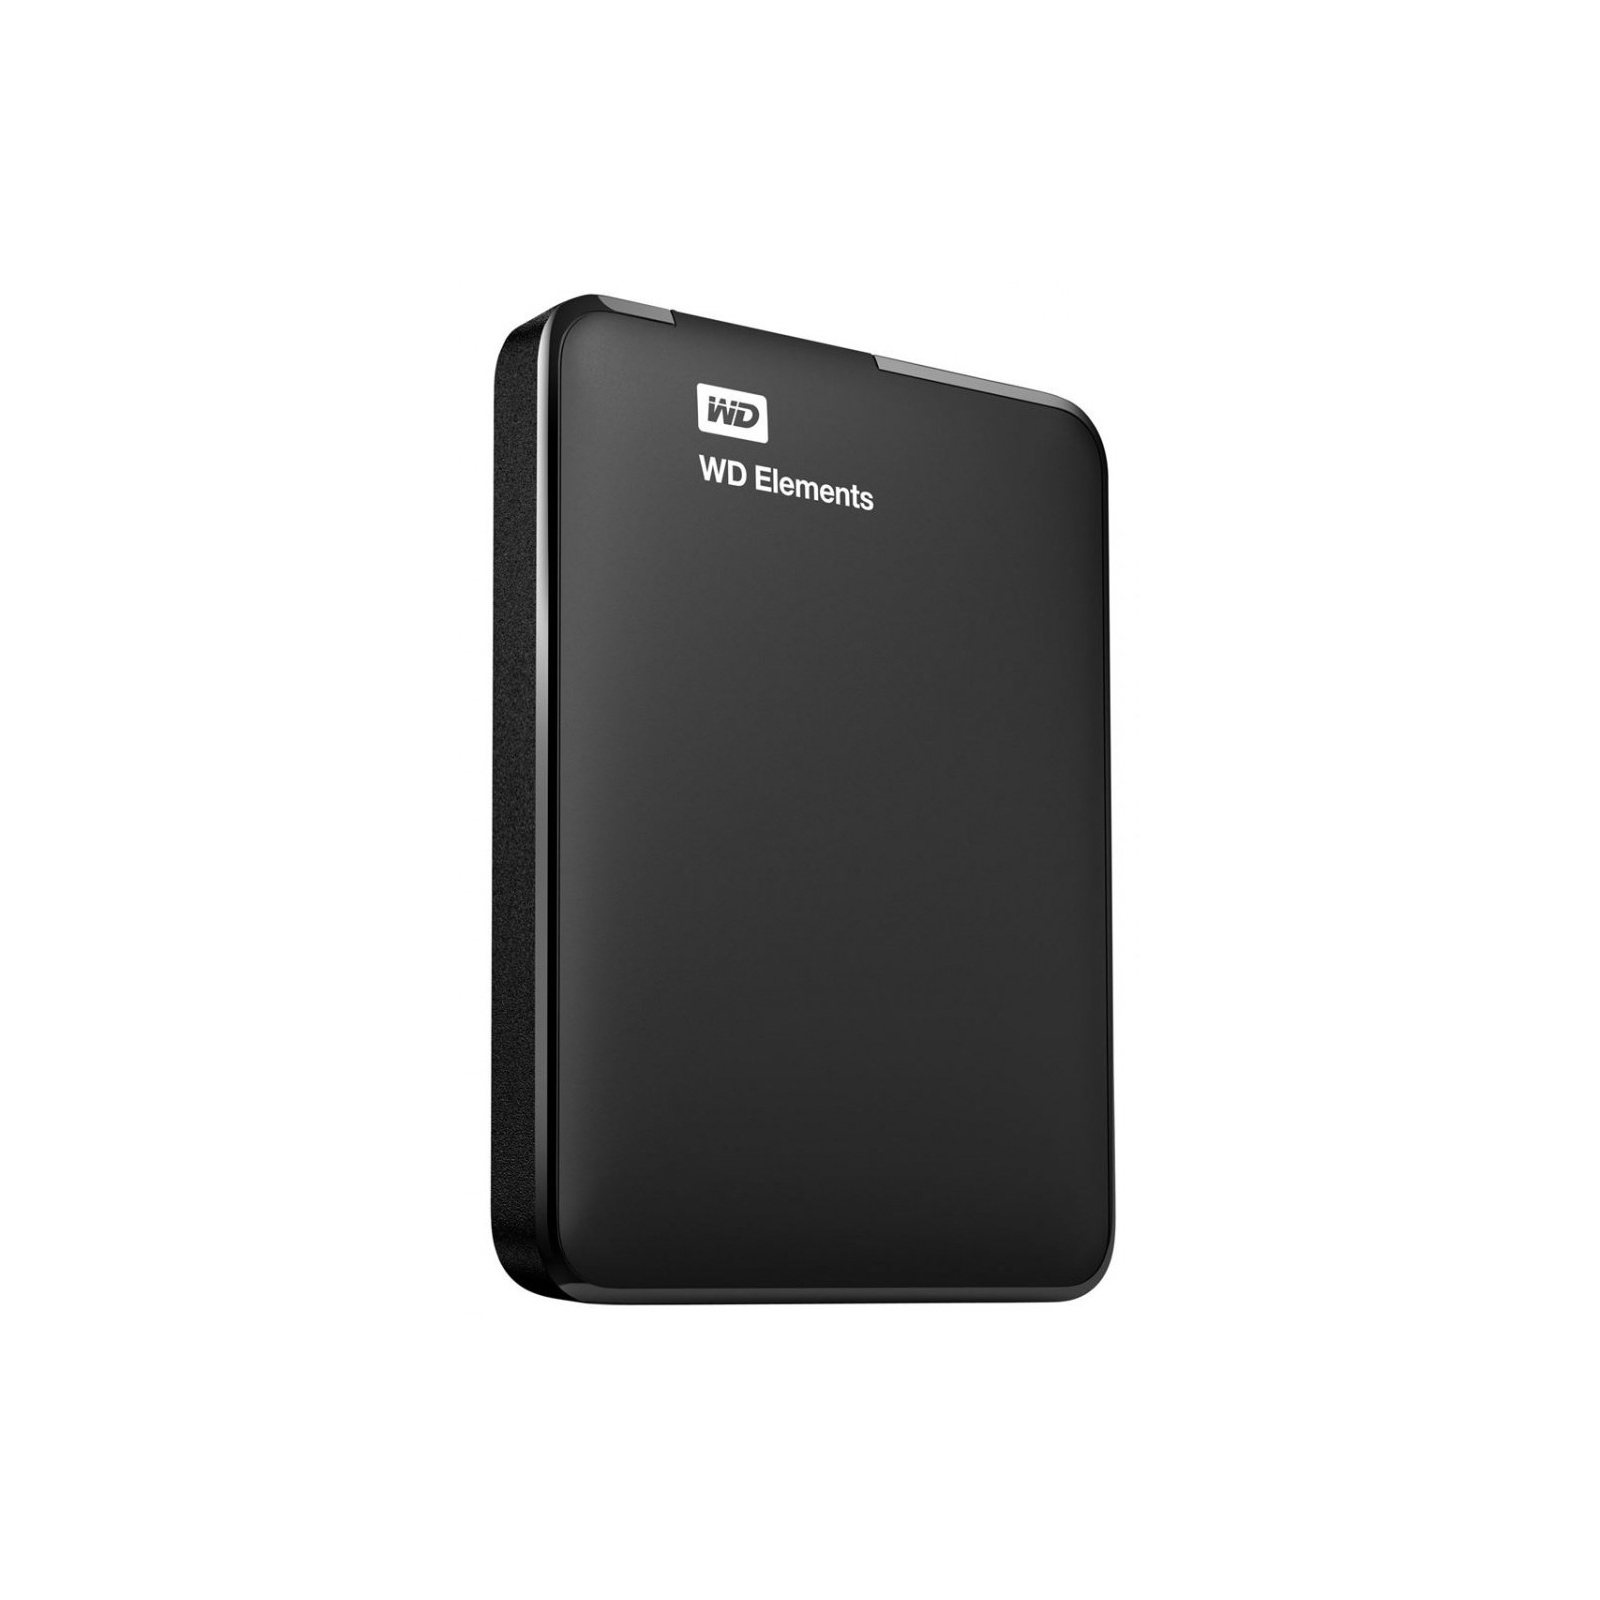 Зовнішній жорсткий диск 2.5" 750GB Elements Portable WD (WDBUZG7500ABK-WESN) зображення 2